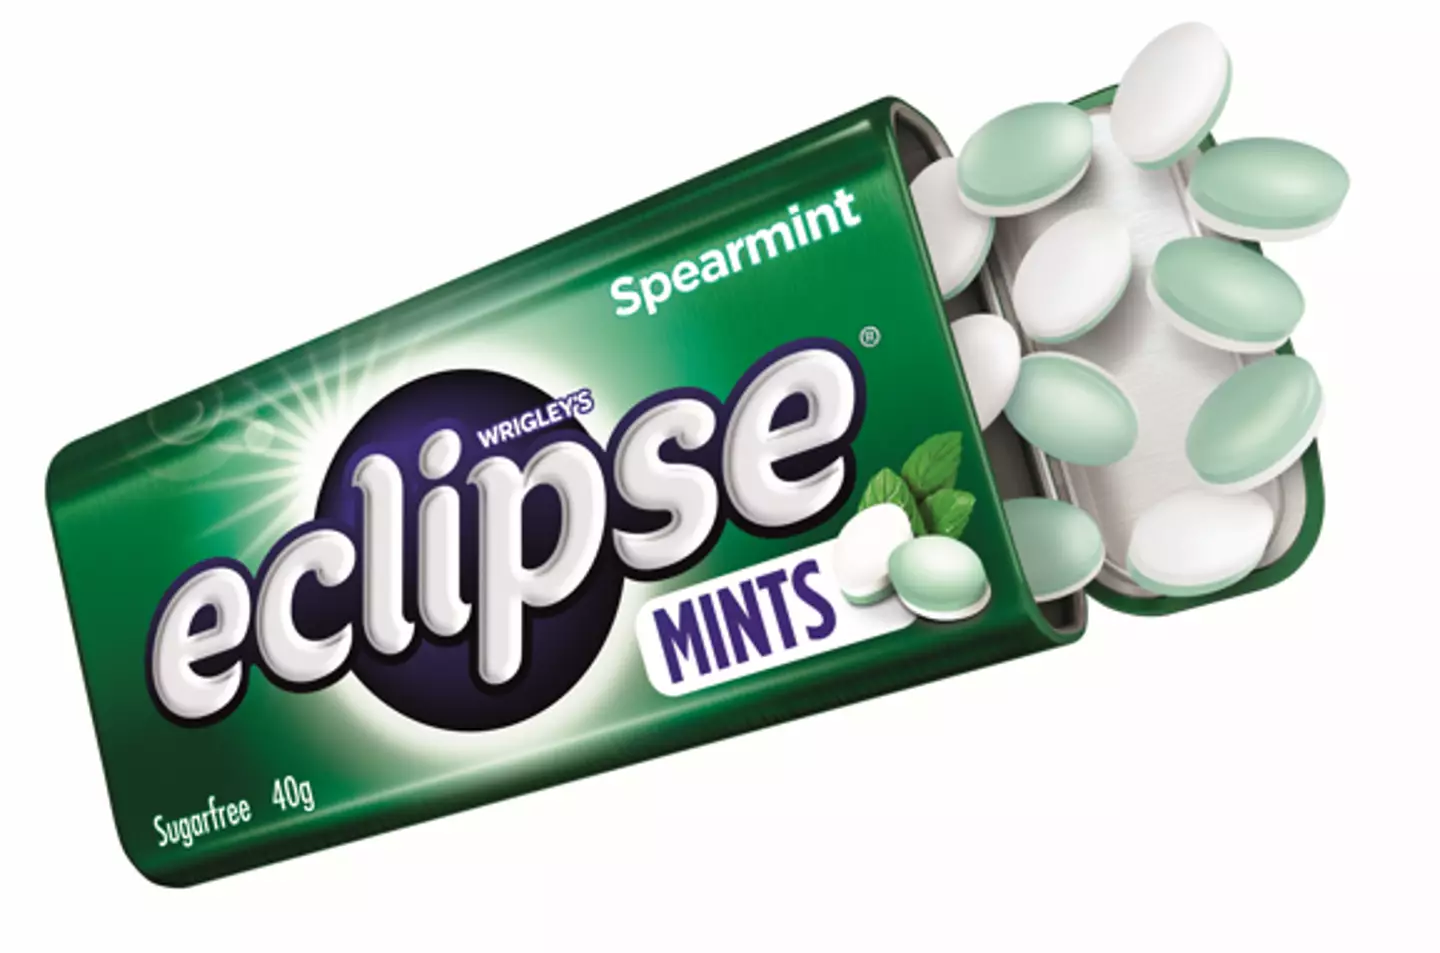 Eclipse Mints